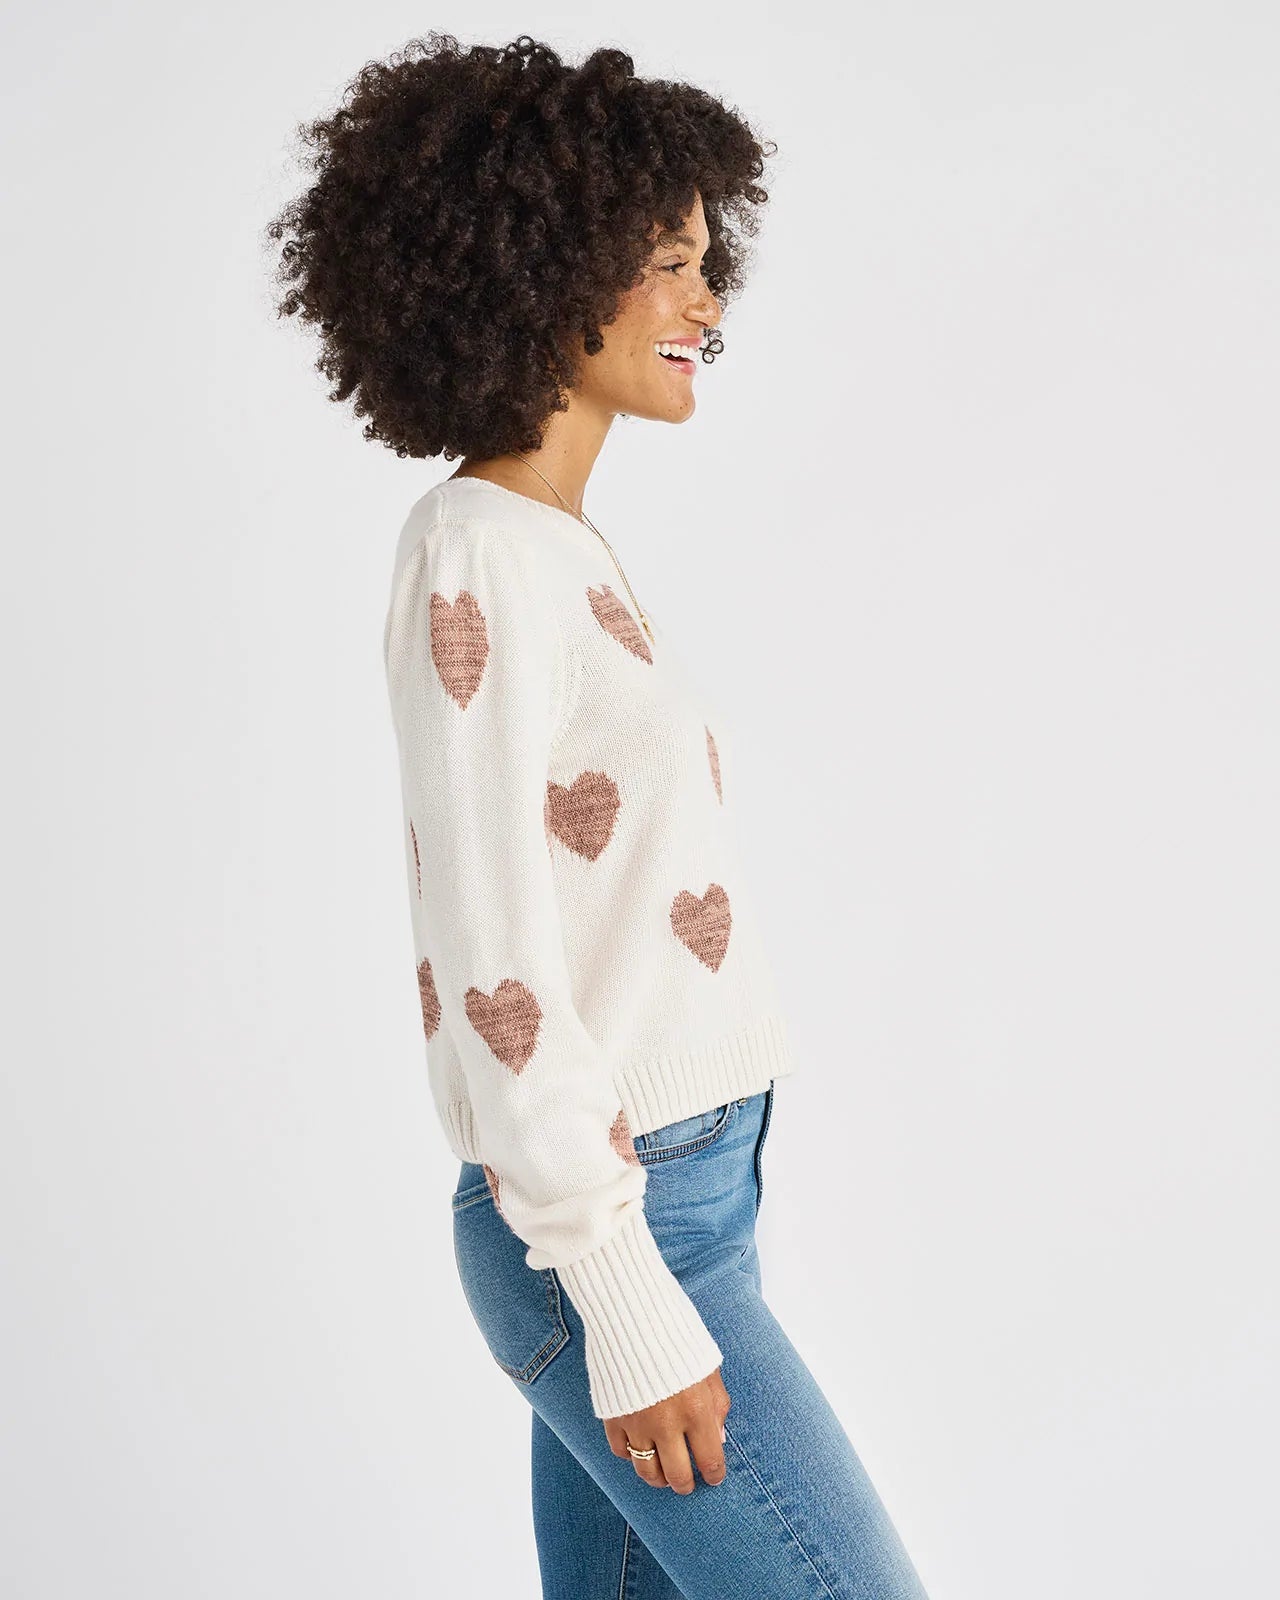 Splendid Annabelle Heart Sweater